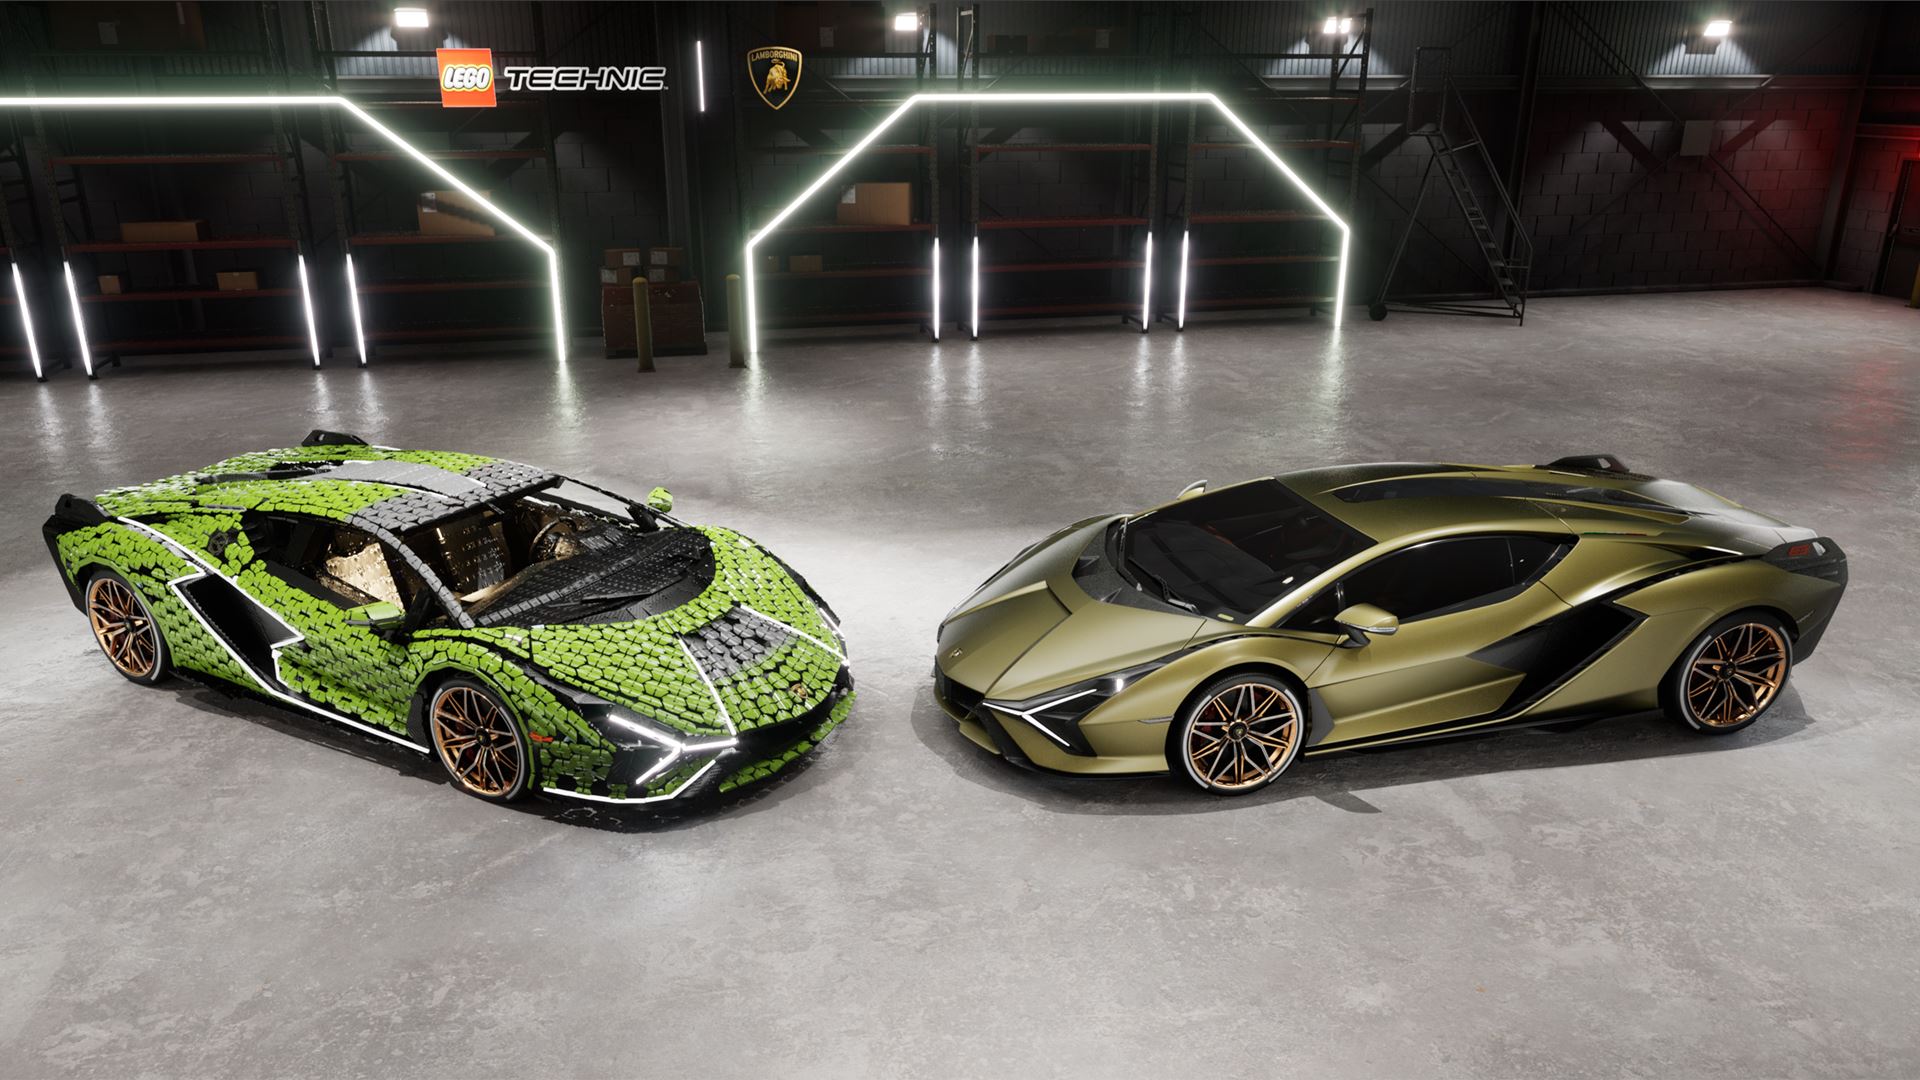 Automobili Lamborghini builds dream cars, also with LEGO® Technic